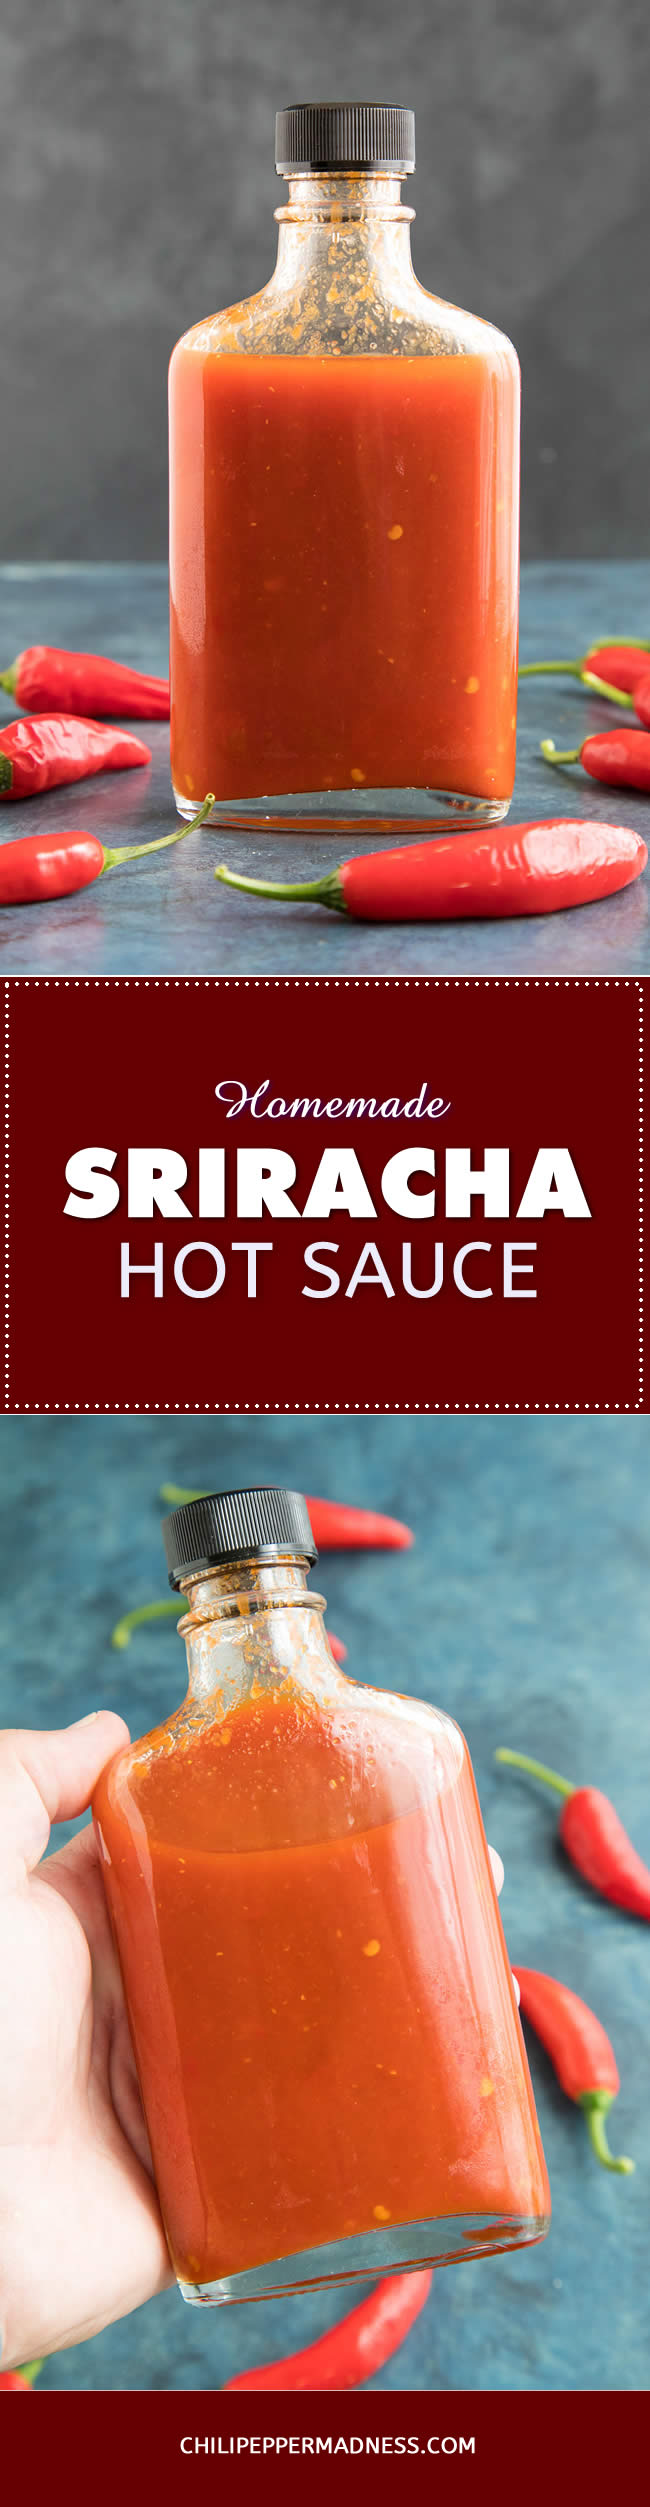 Homemade Sriracha Hot Sauce - Recipe